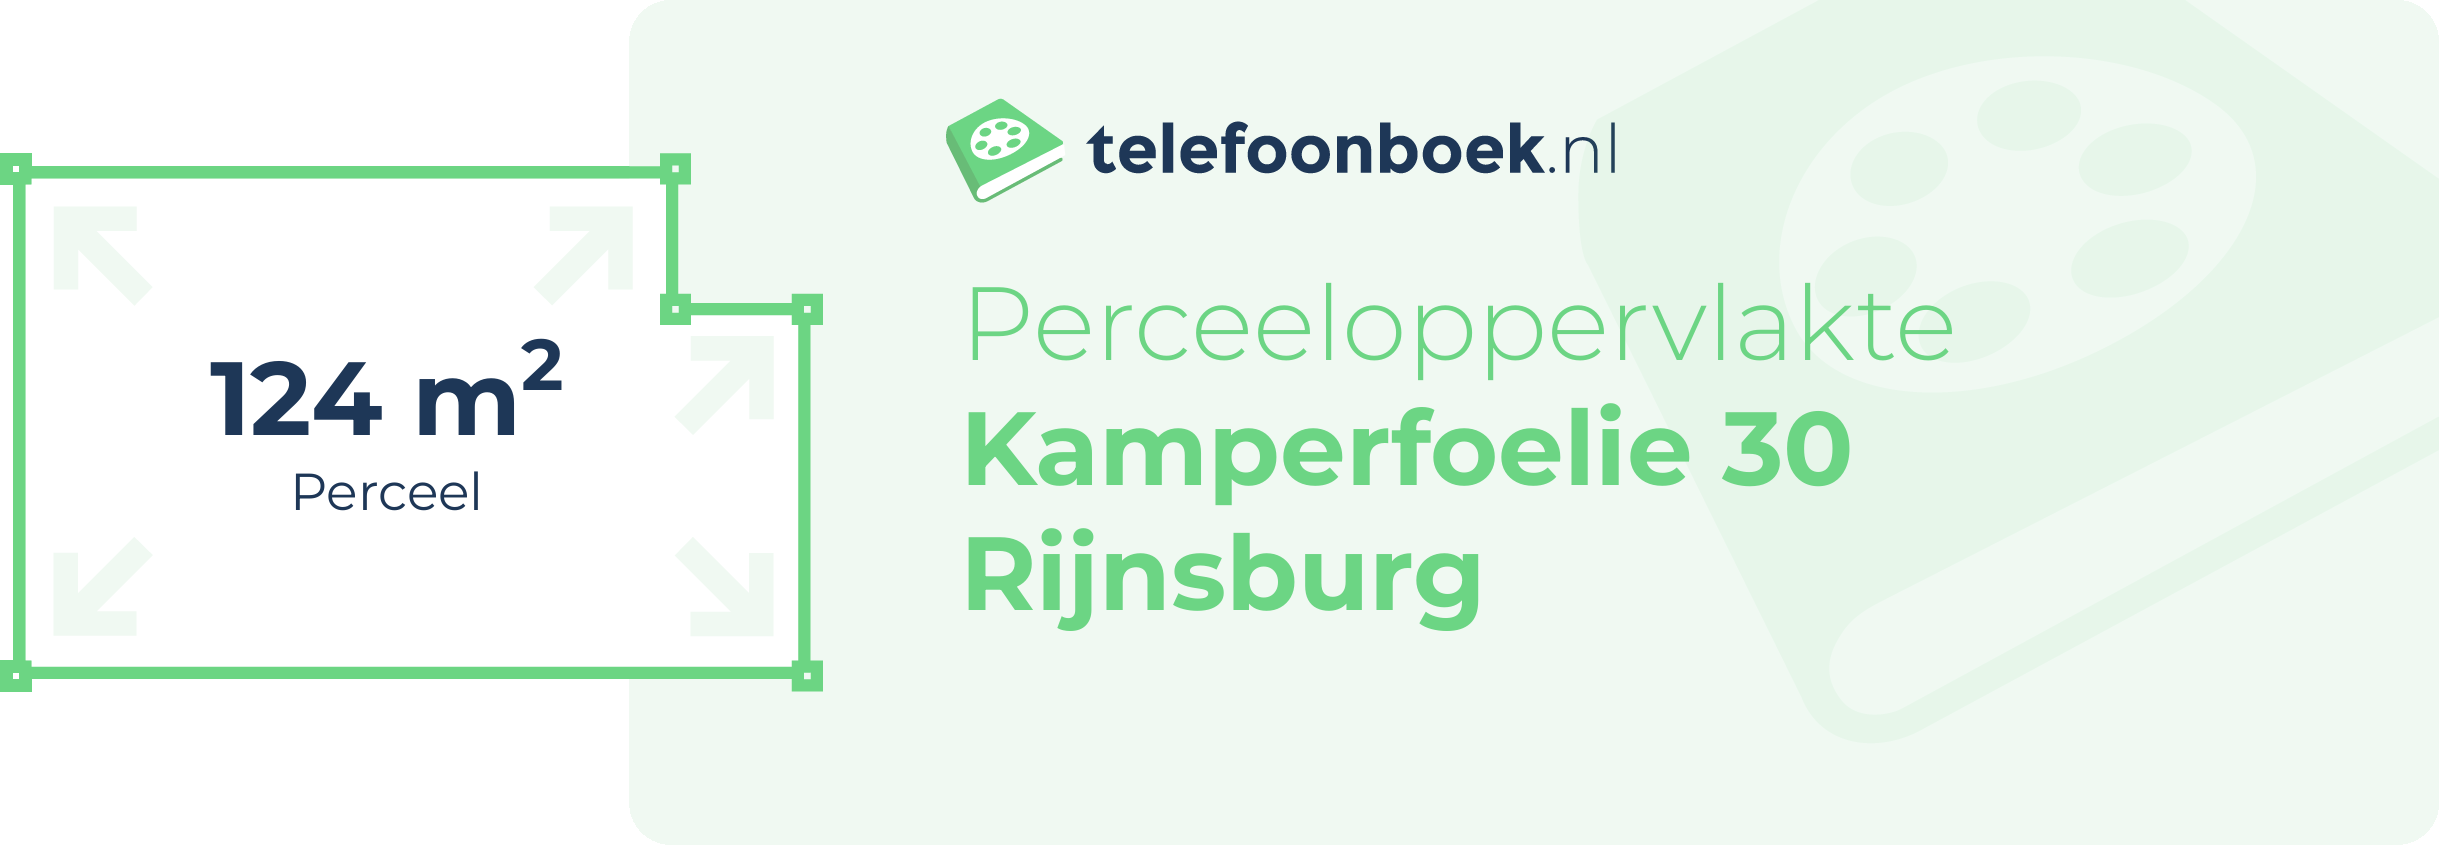 Perceeloppervlakte Kamperfoelie 30 Rijnsburg